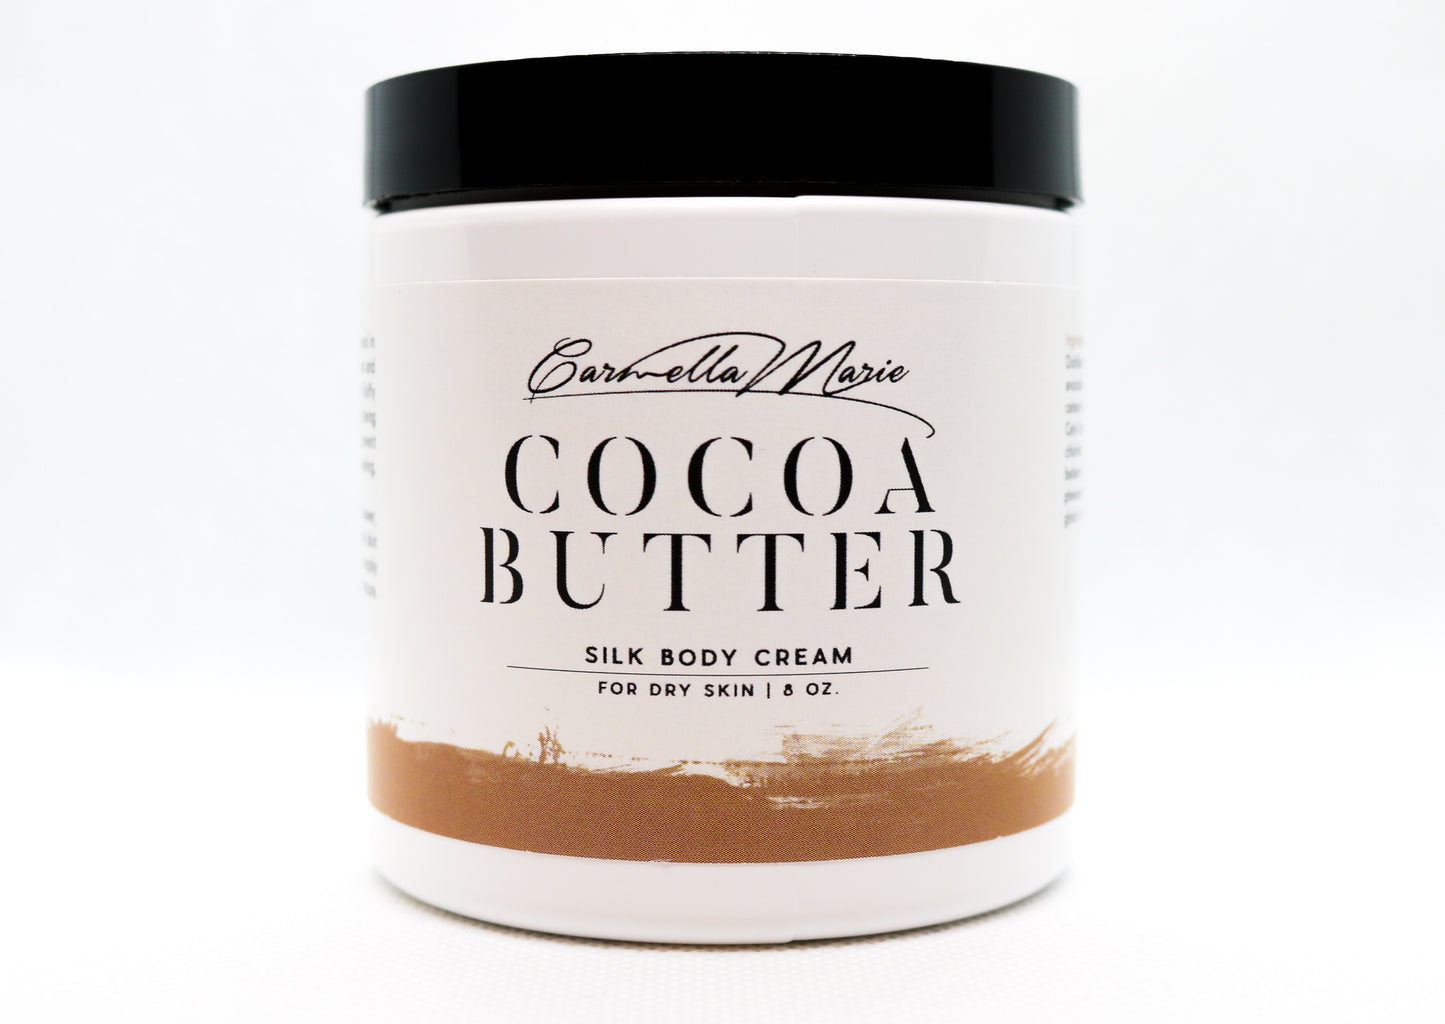 Winter Skin Care silky cocoa butter